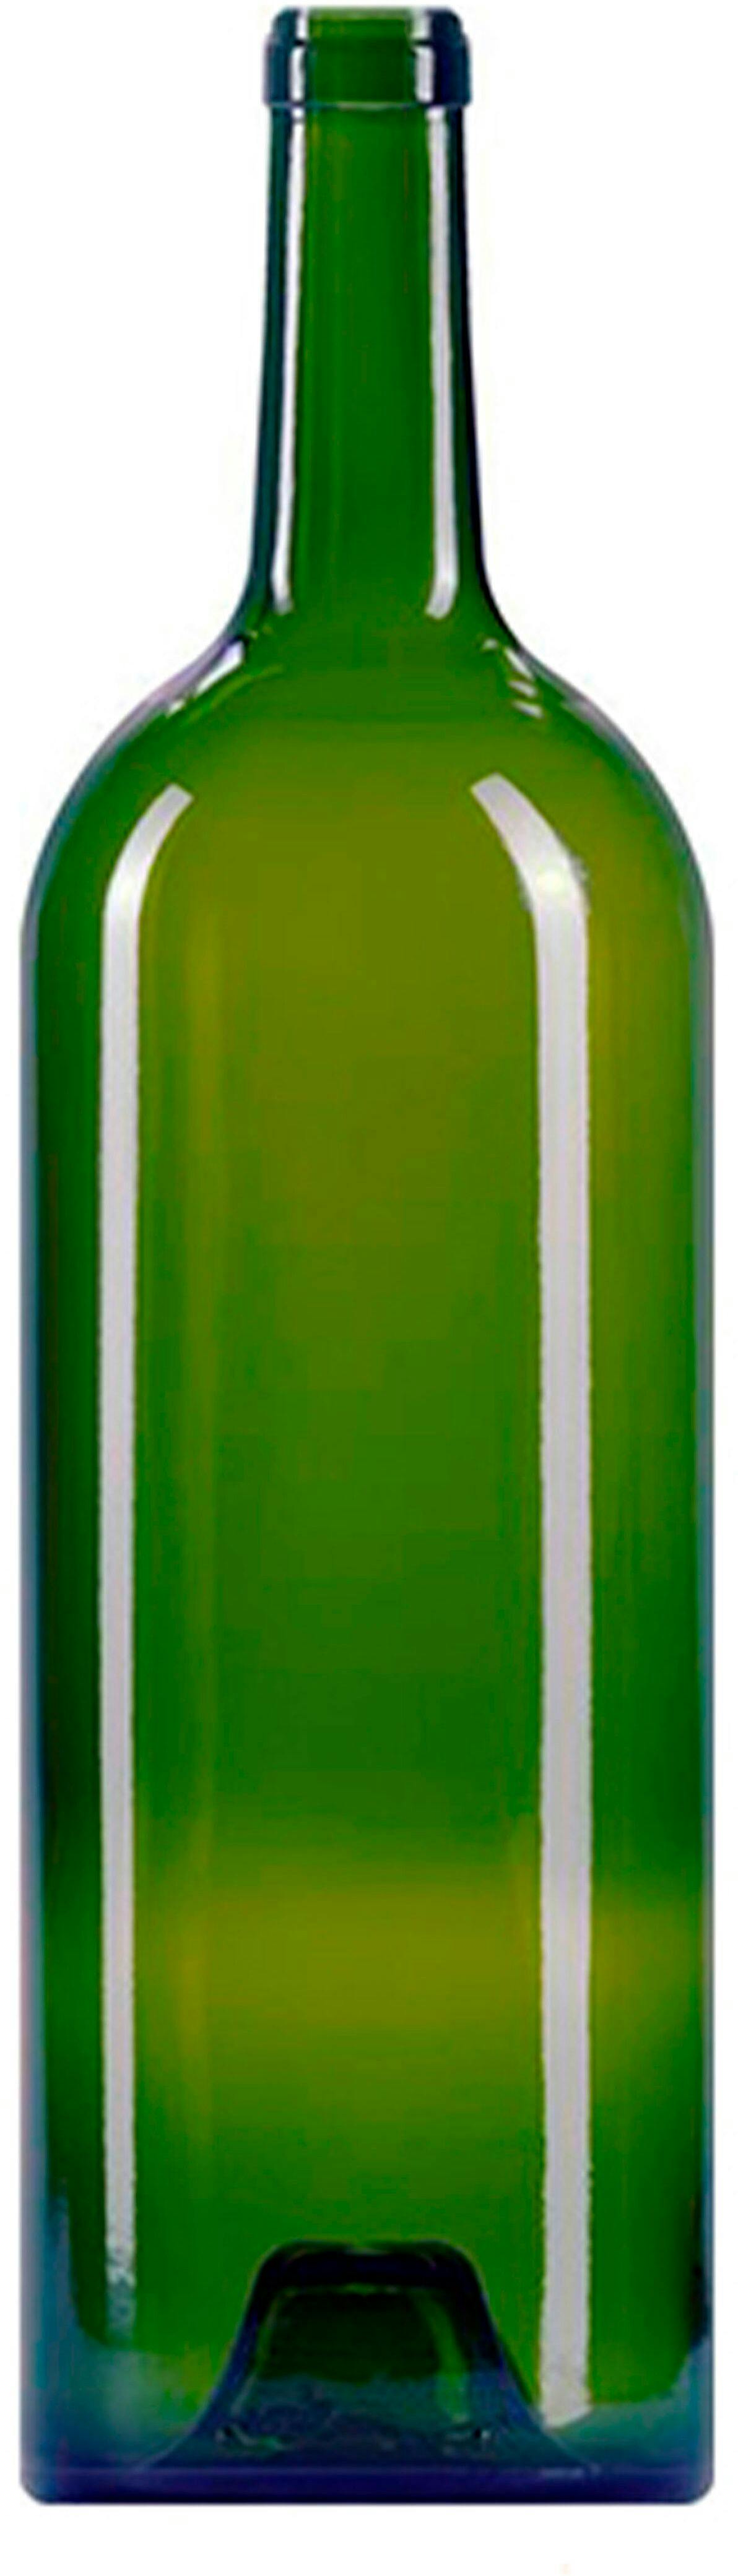 Φιάλες Μπορντό   GRAND VIN 1500 ml BG-φελλός